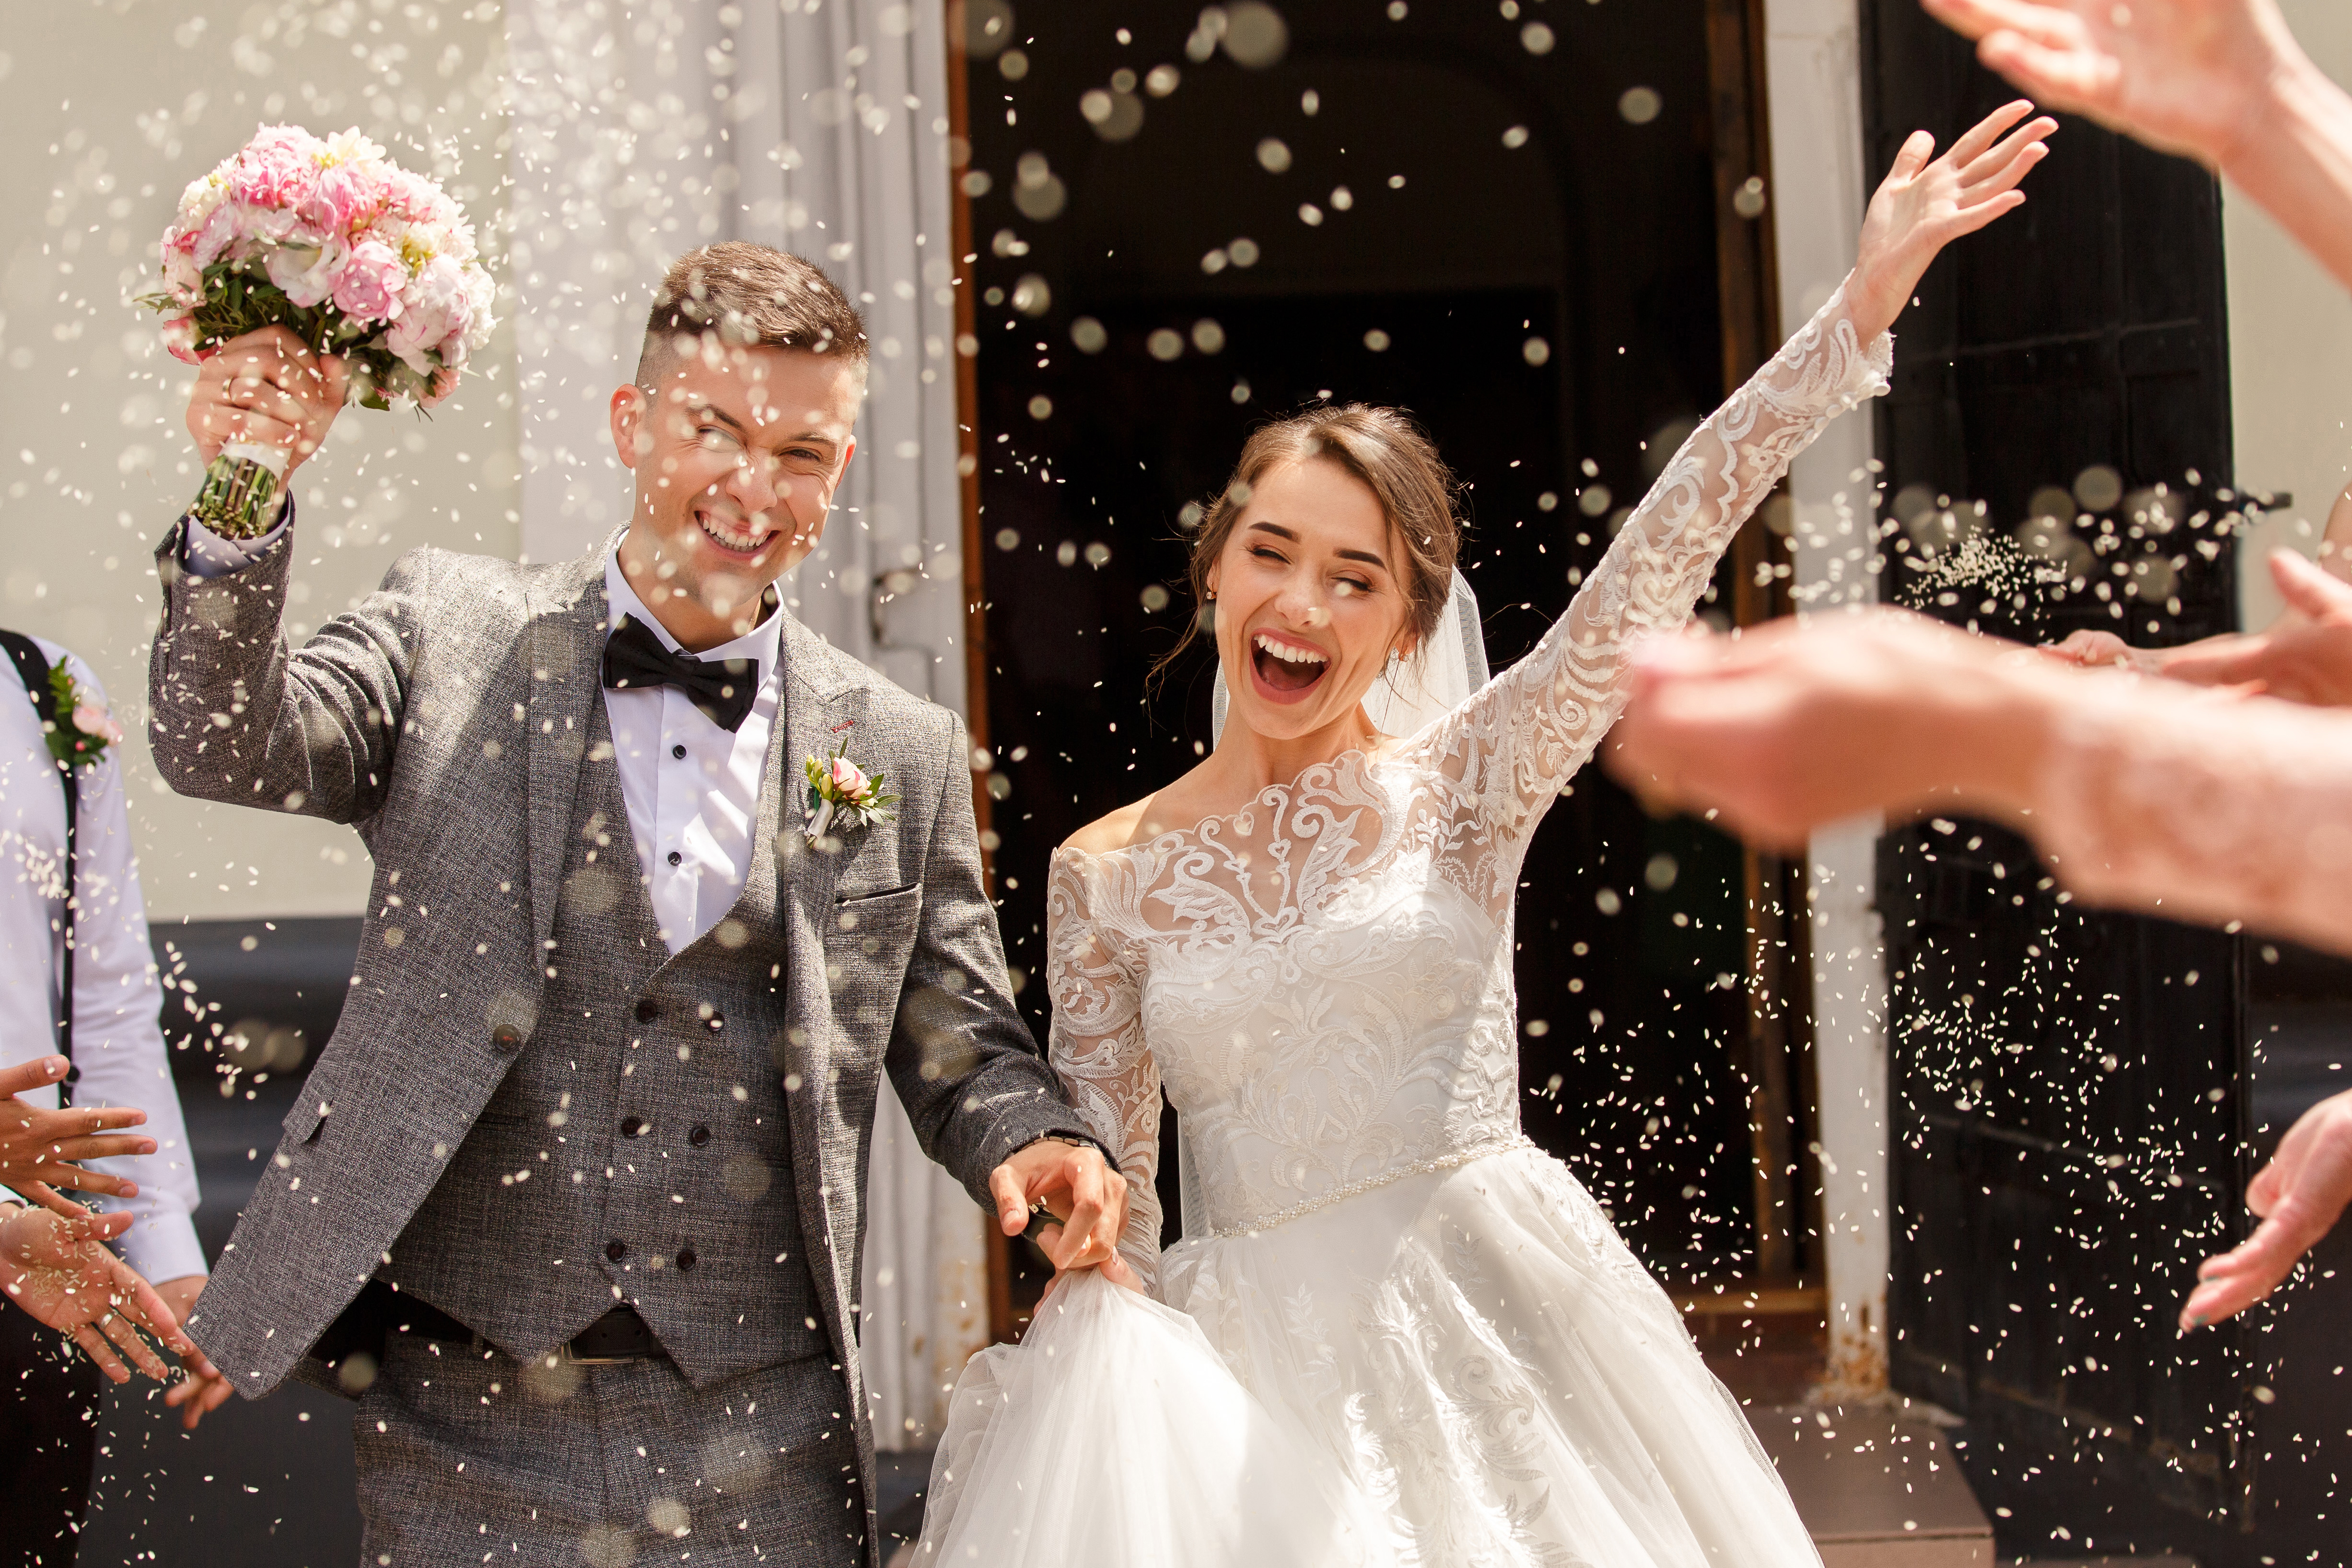 Braut und Bräutigam jubeln bei ihrer Hochzeitsfeier | Quelle: Shutterstock